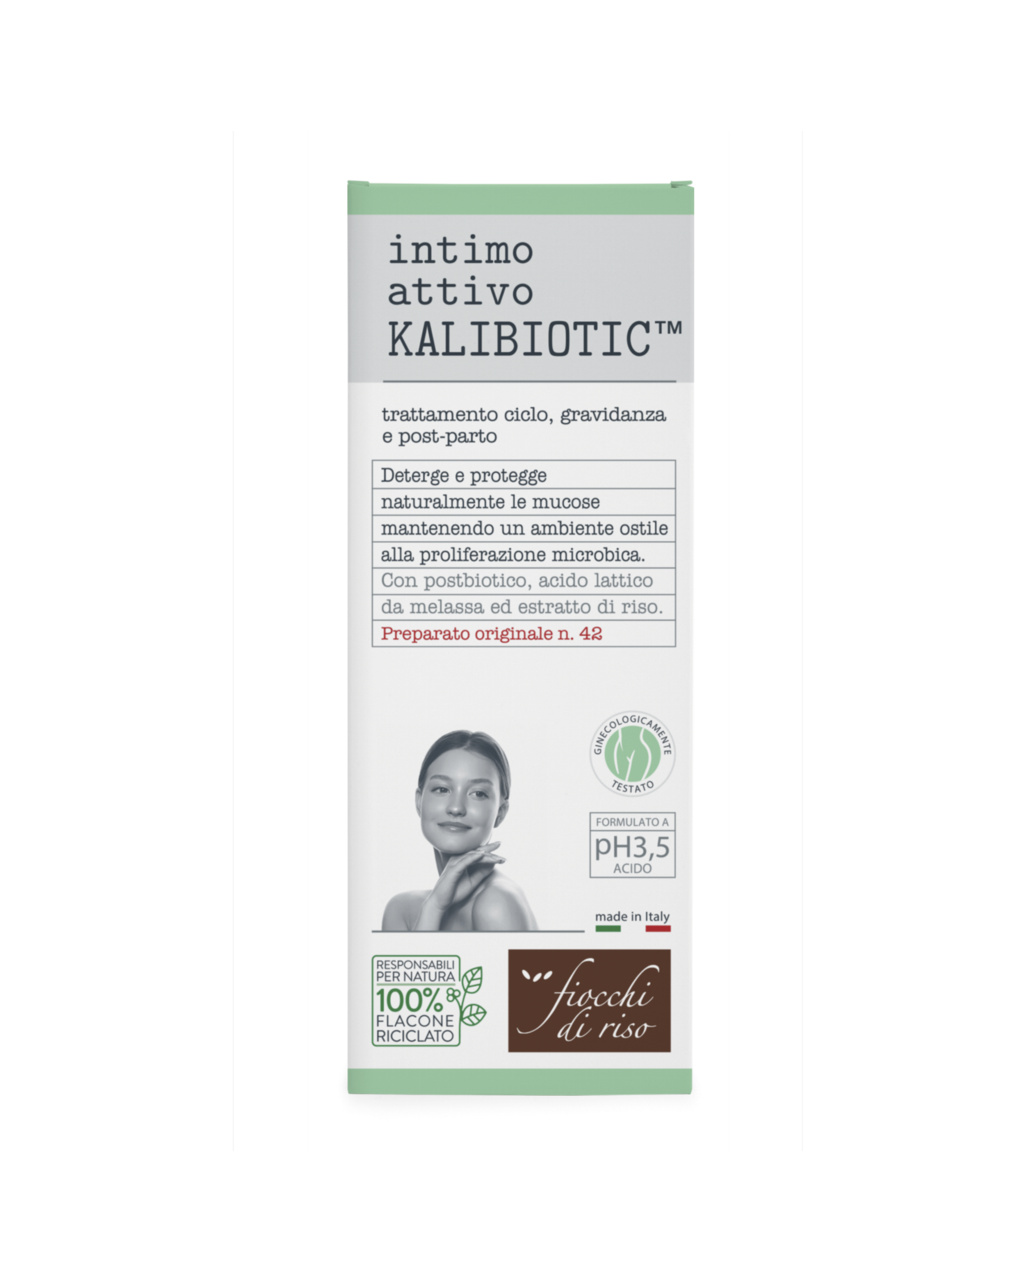 Intimo attivo kalibiotic ph 3.5 | 240 ml - fiocchi di riso